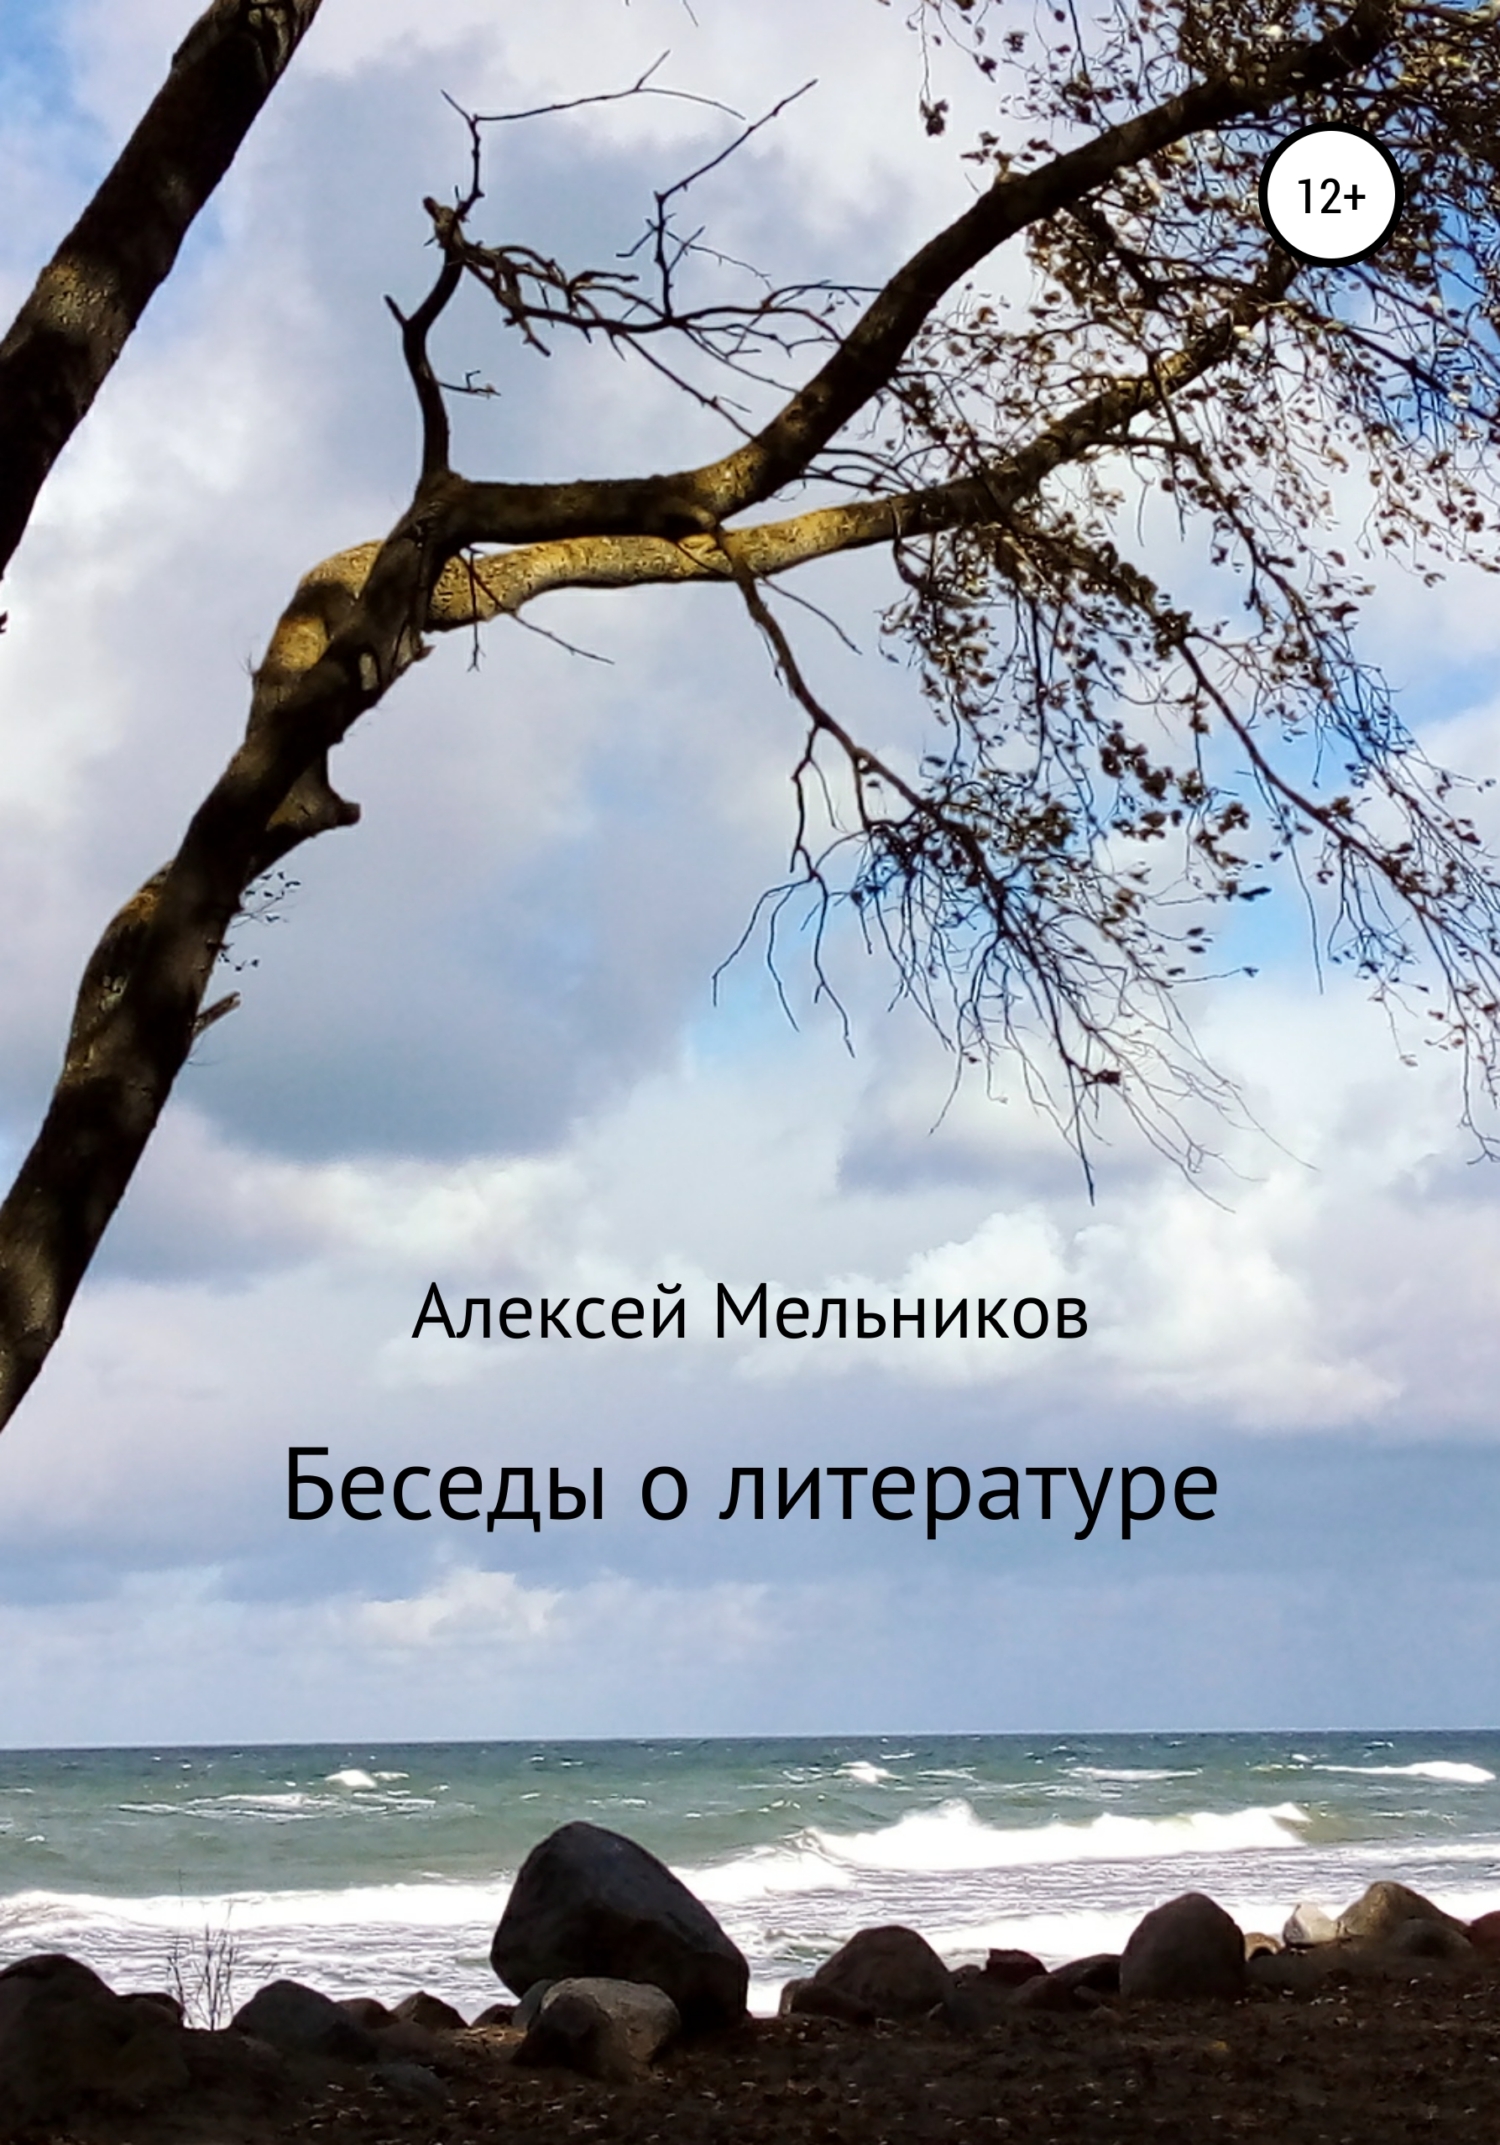 Беседы о литературе - Алексей Мельников